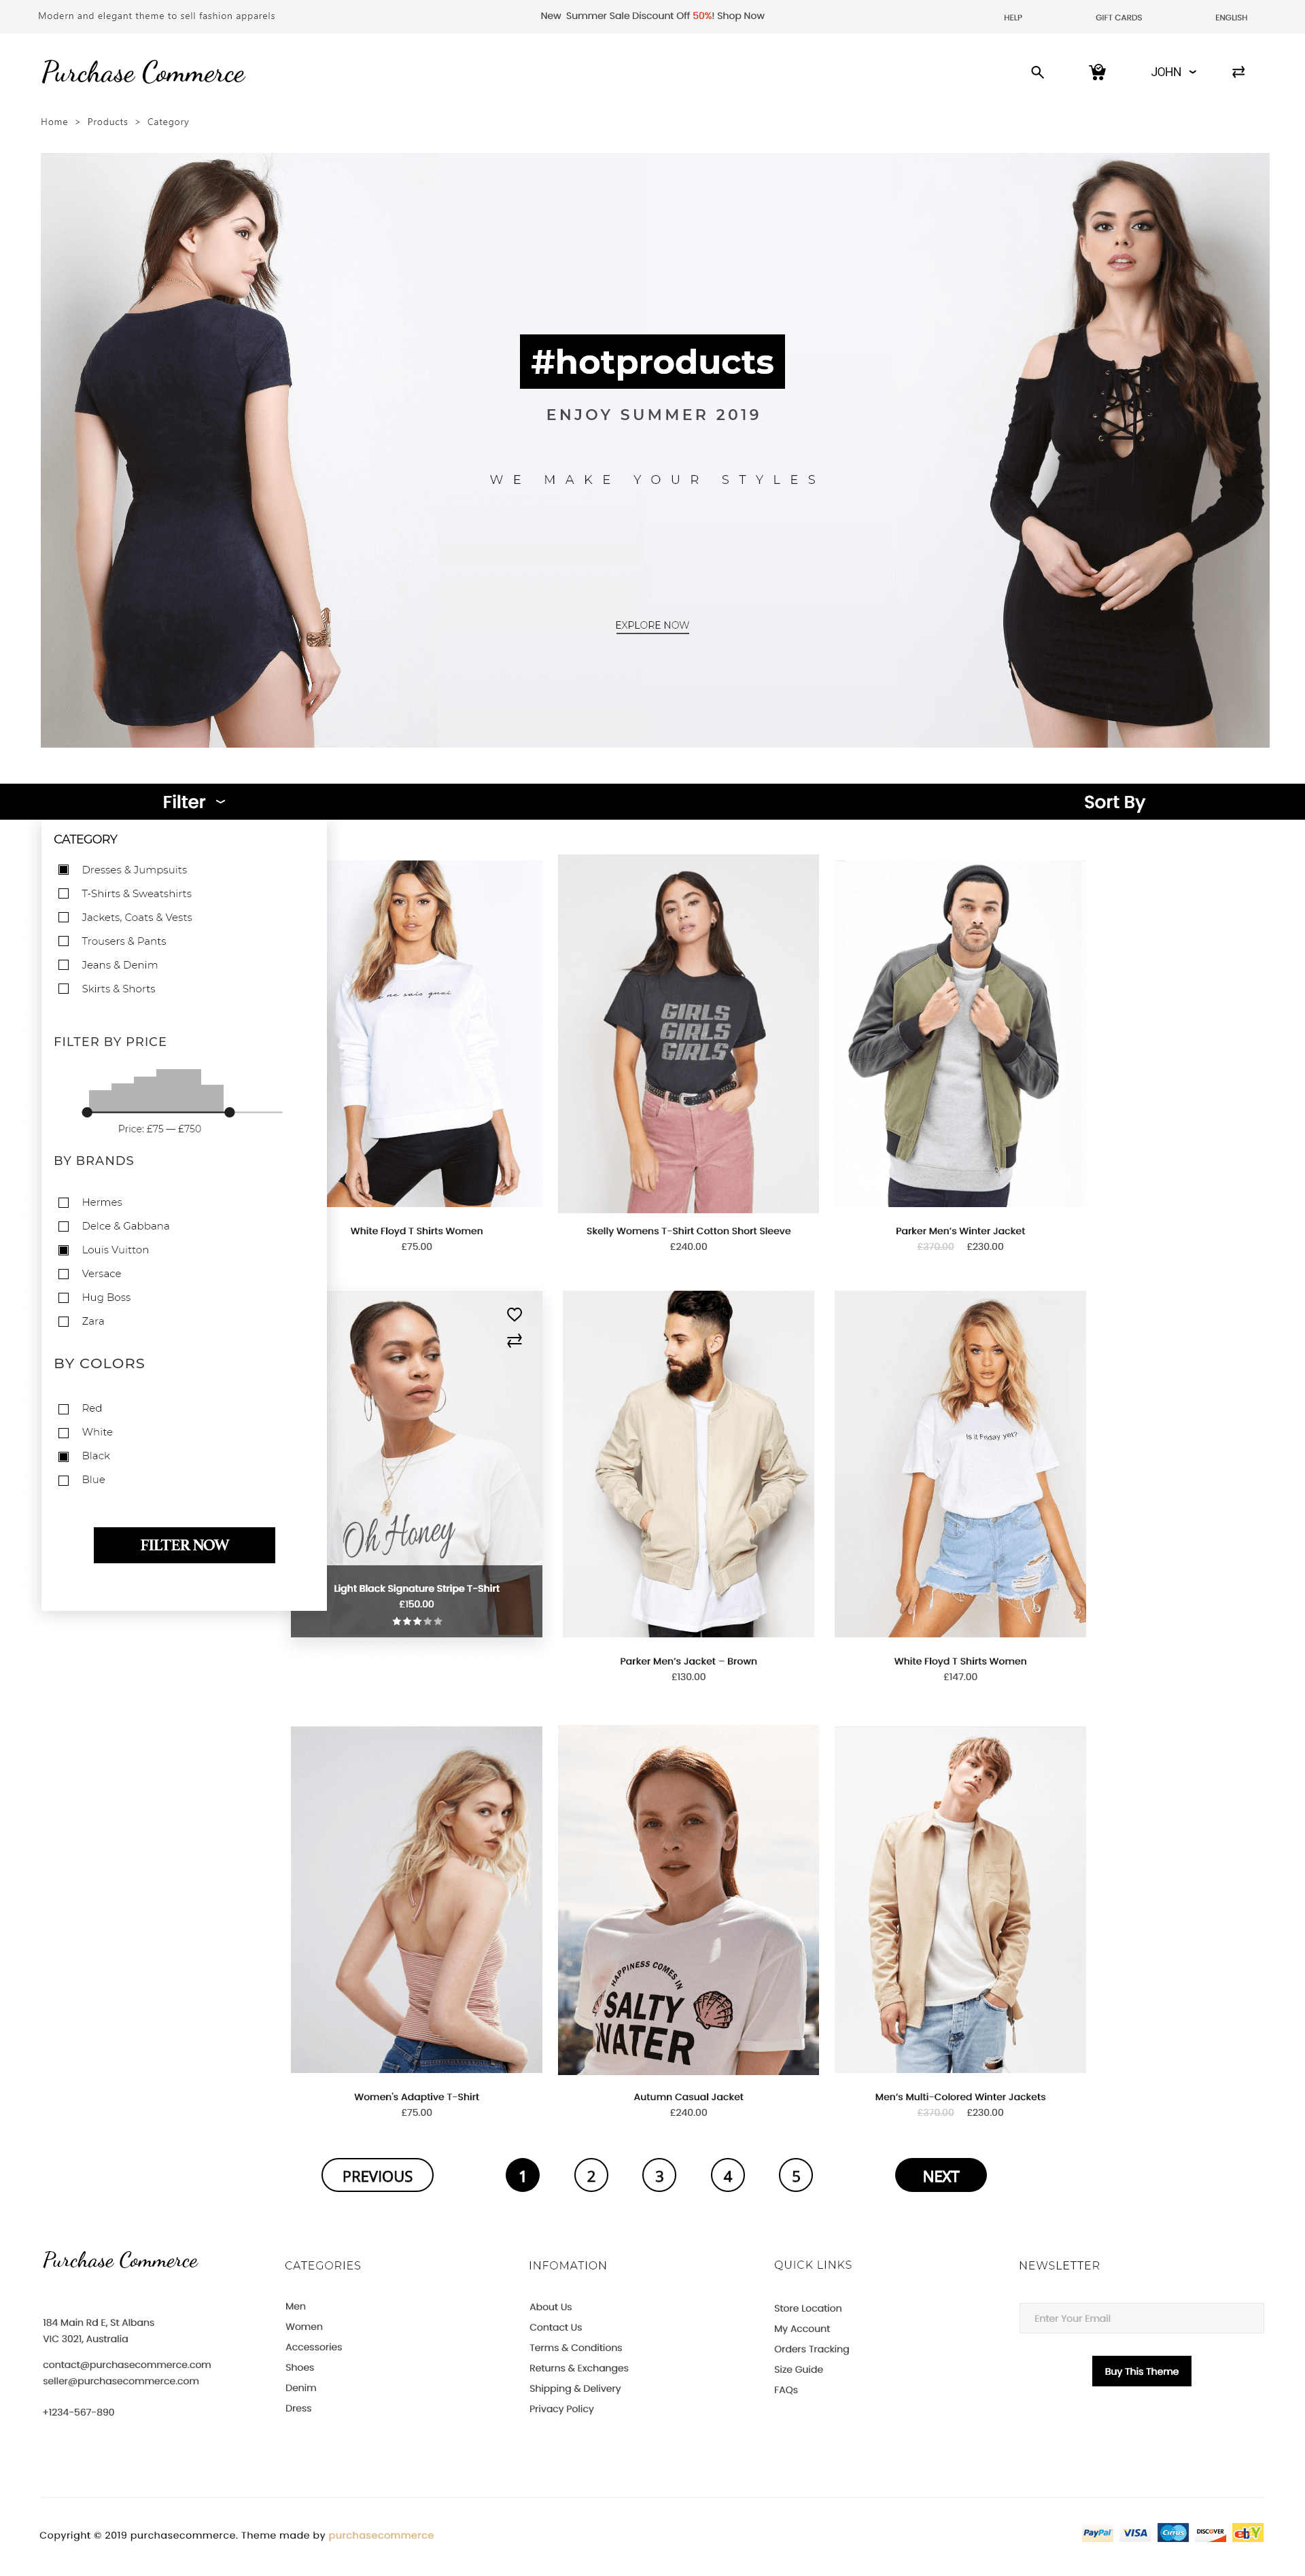 apparels-ecommerce-website-templates